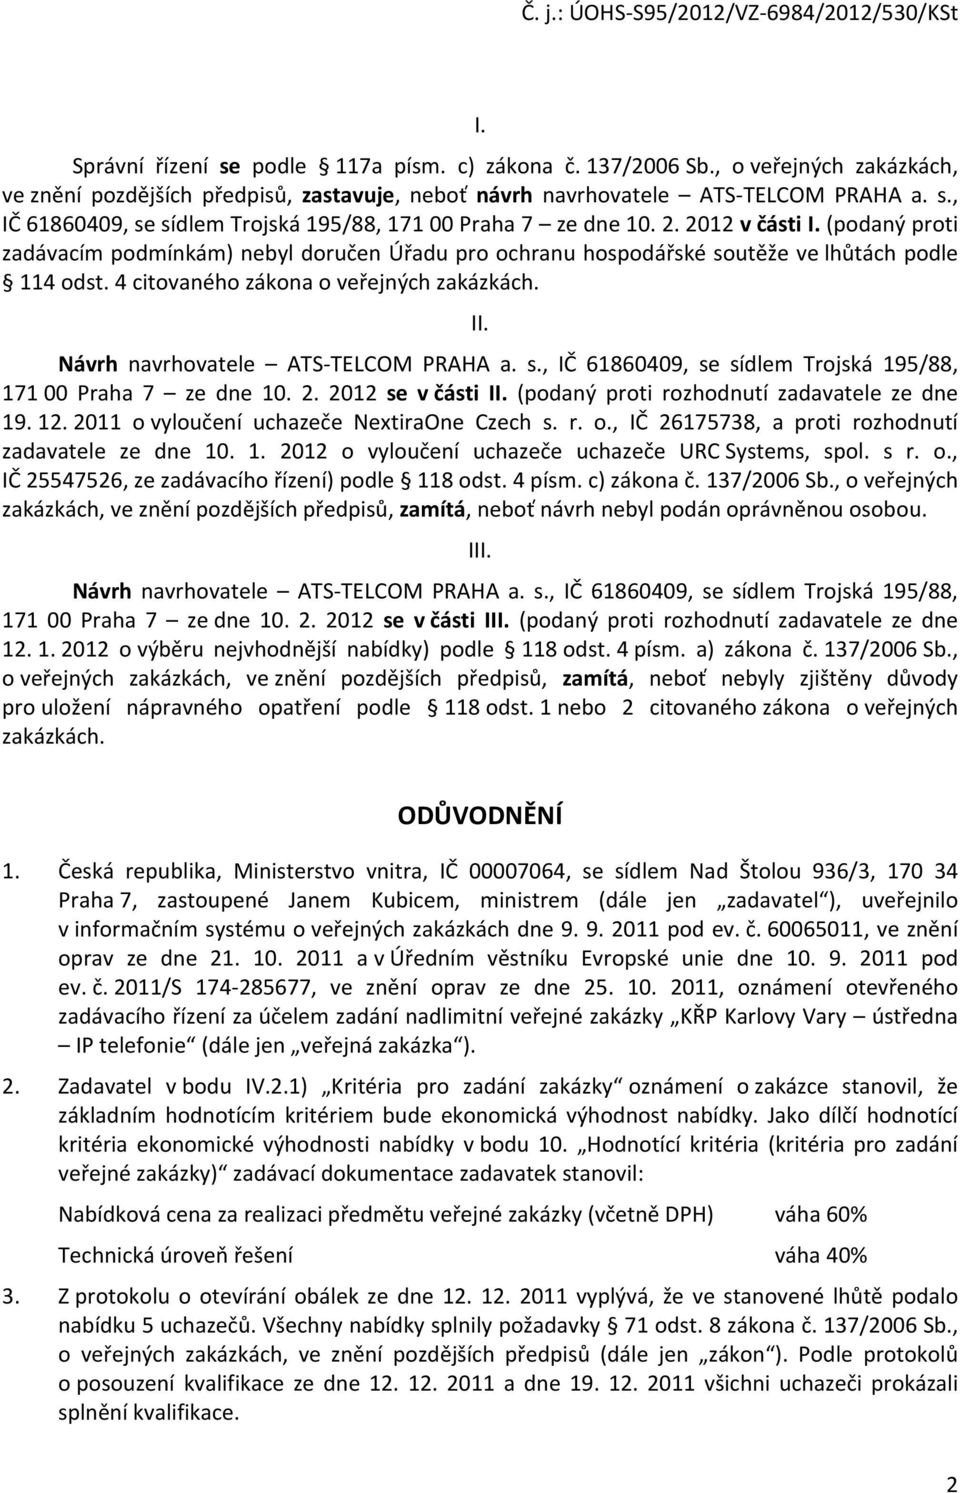 Návrh navrhovatele ATS-TELCOM PRAHA a. s., IČ 61860409, se sídlem Trojská 195/88, 171 00 Praha 7 ze dne 10. 2. 2012 se v části II. (podaný proti rozhodnutí zadavatele ze dne 19. 12.